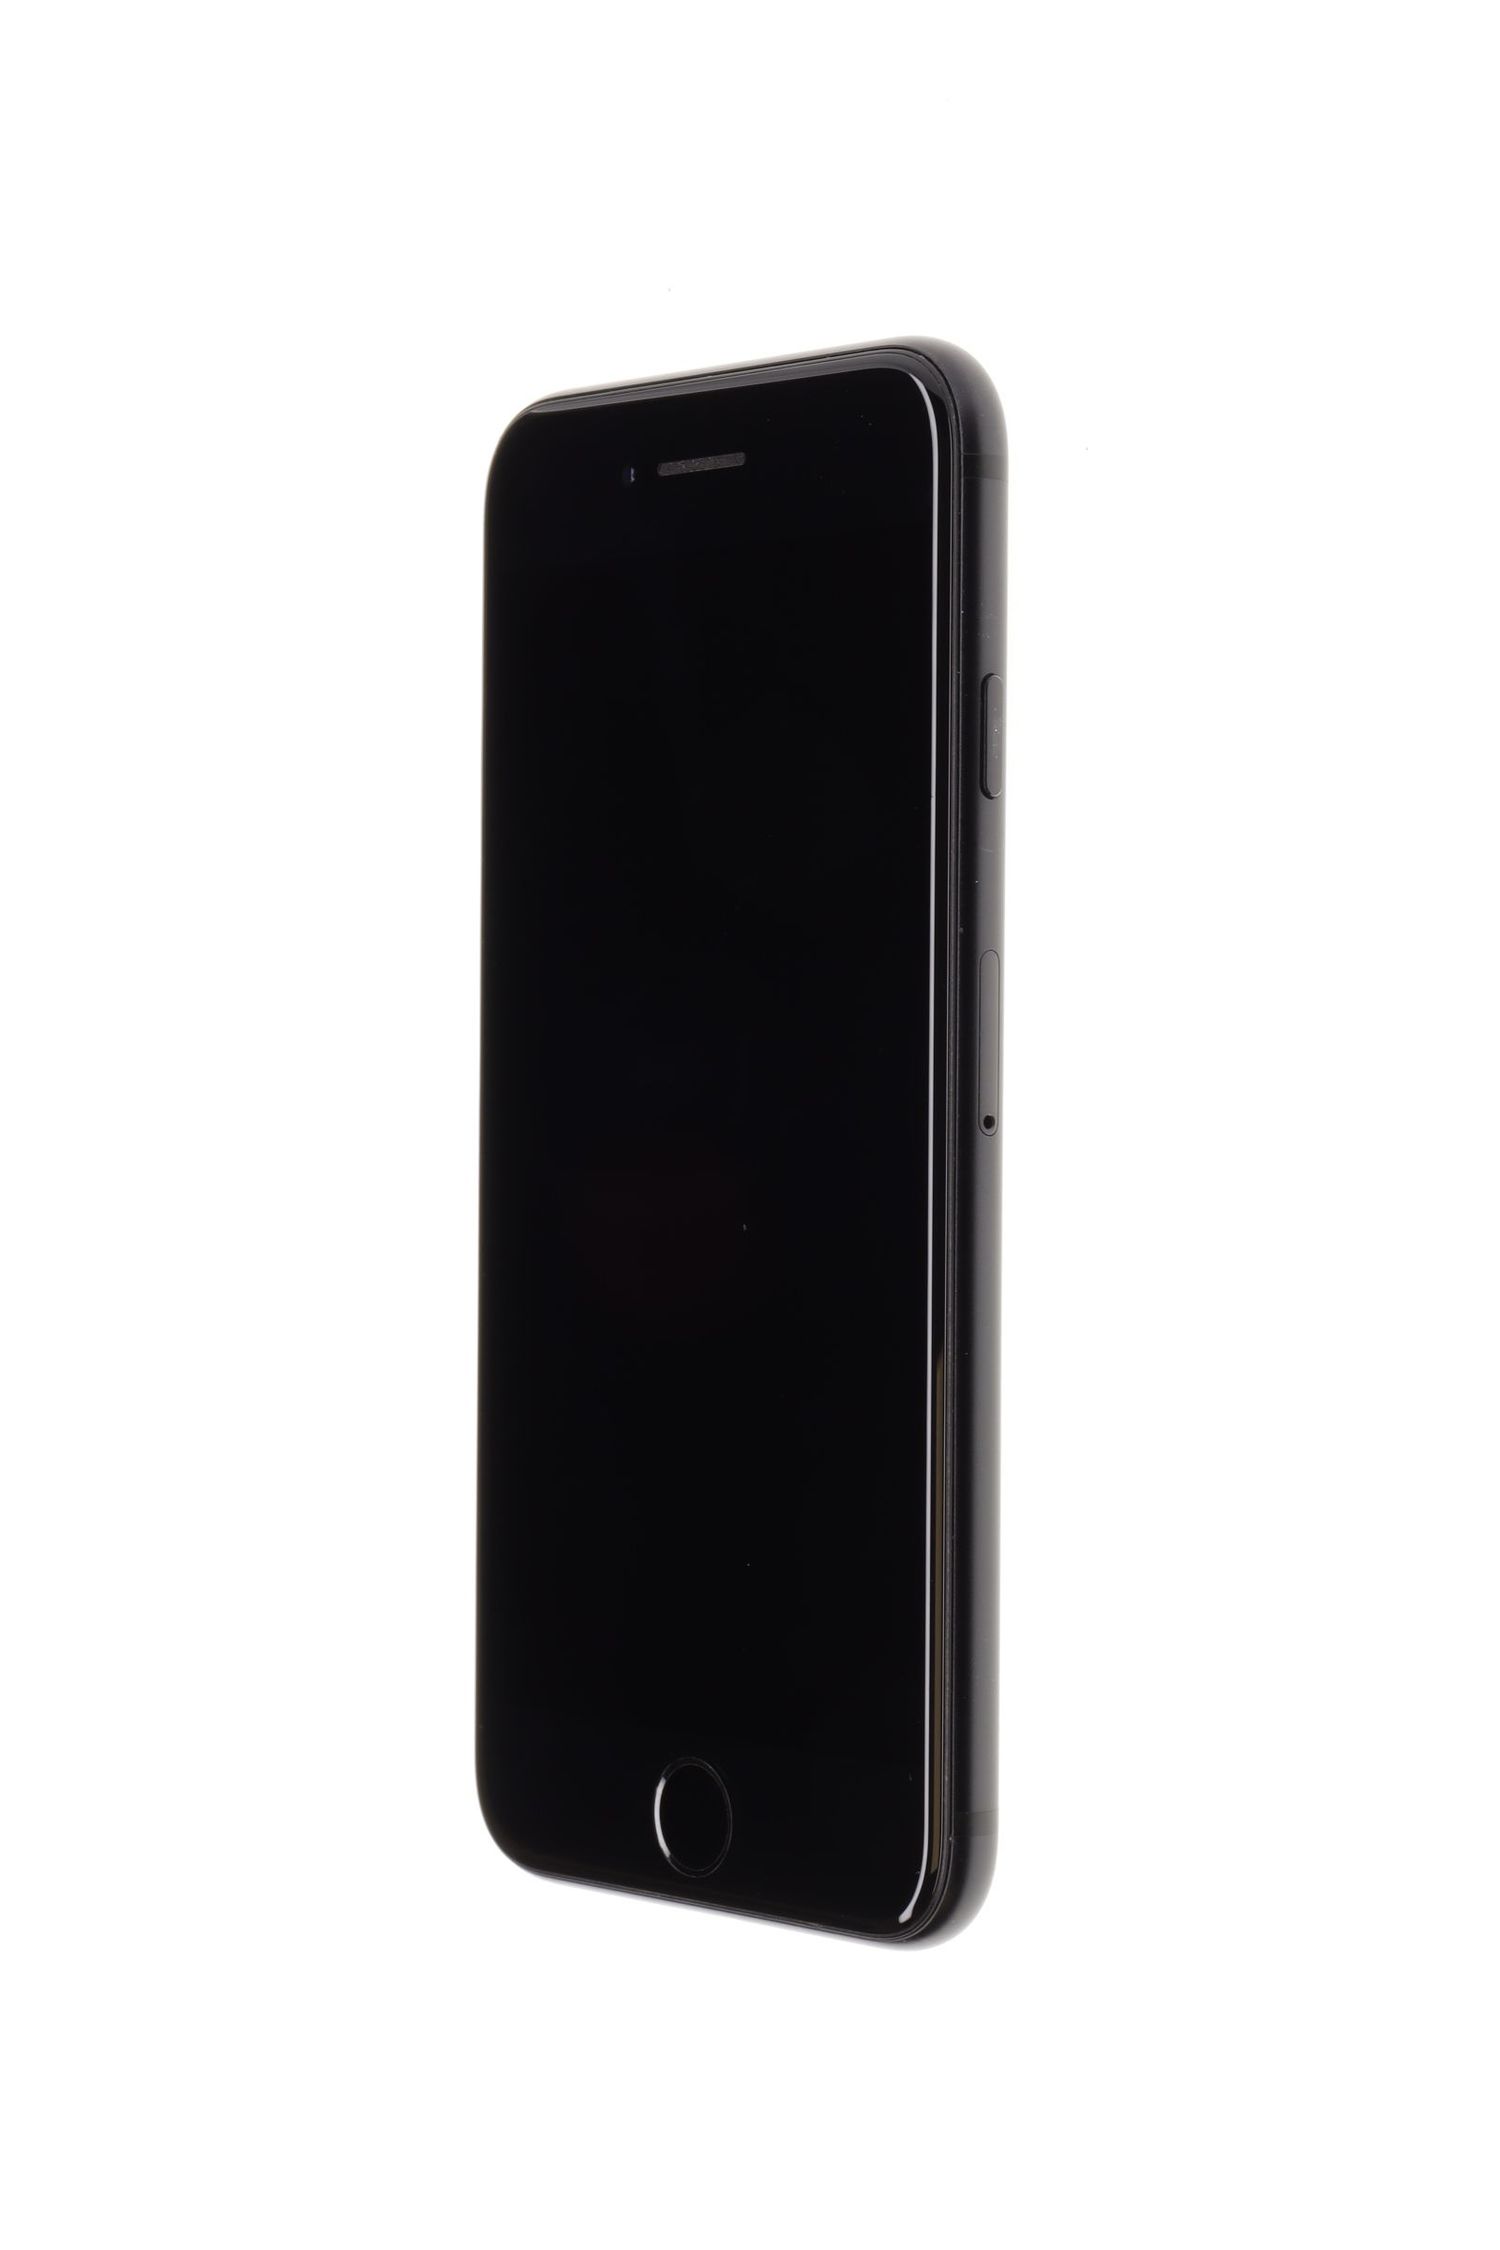 Mobiltelefon Apple iPhone SE 2020, Black, 128 GB, Excelent